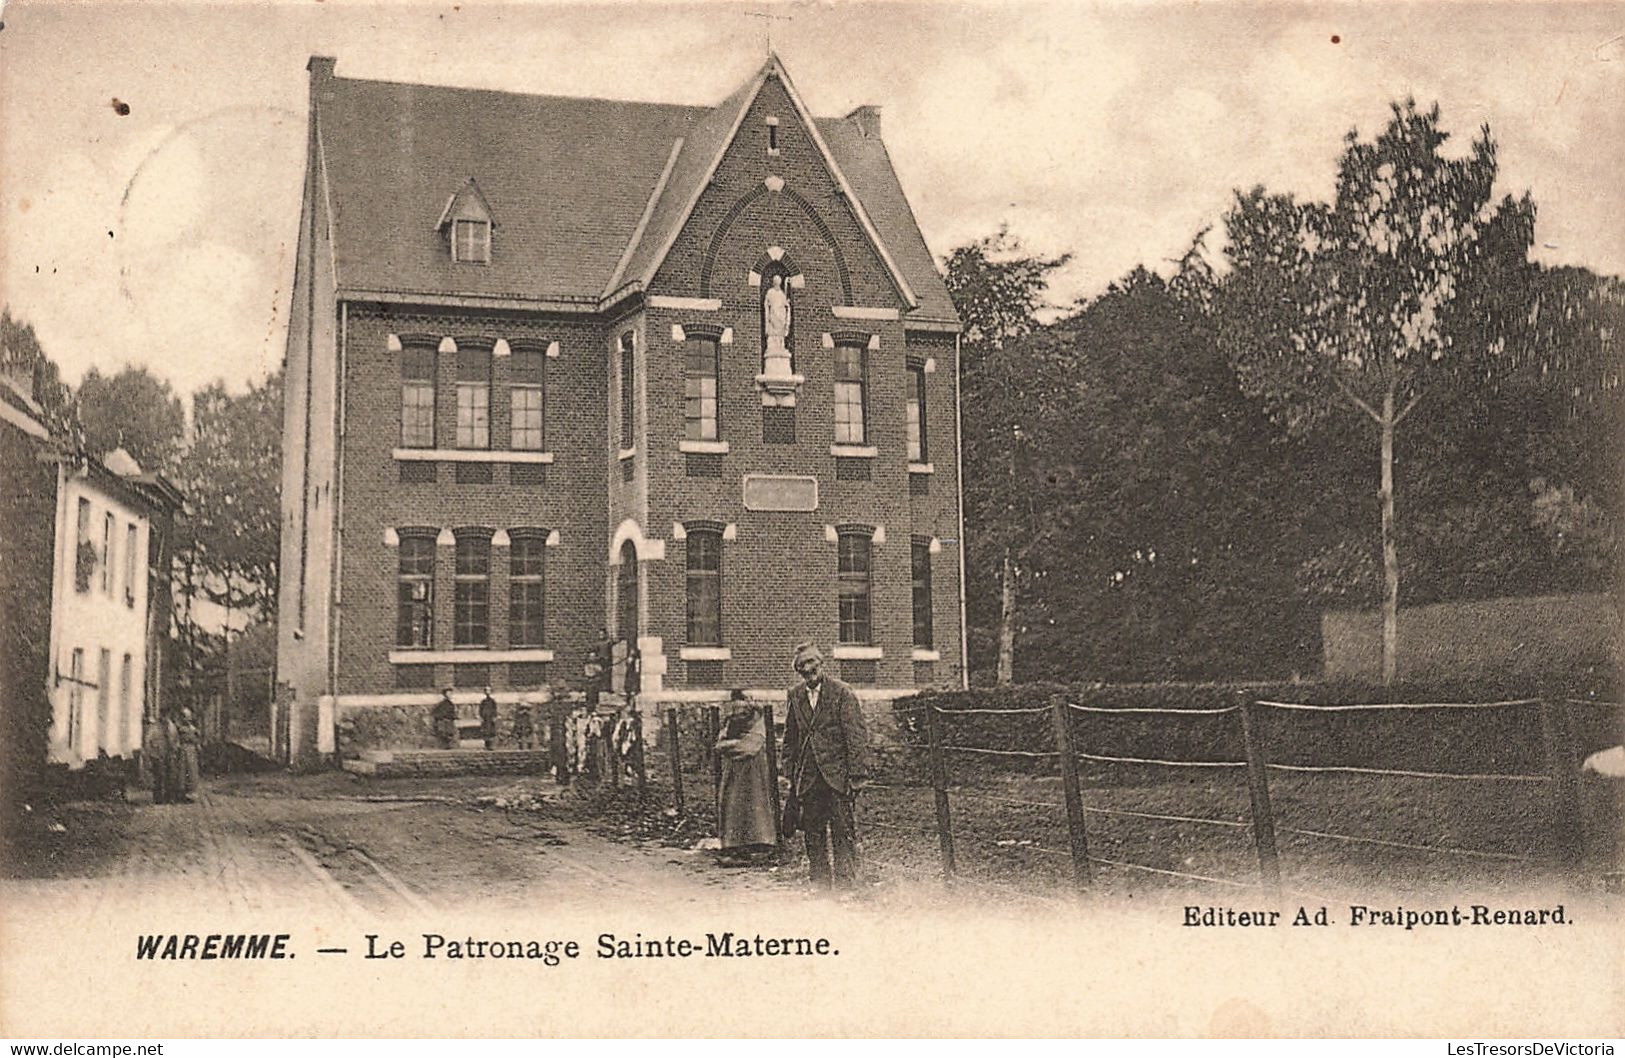 Belgique - Waremme - Le Patronnage Sainte Materne - Edit. Ad. Fraipont Renard - Précurseur - Carte Postale Ancienne - Waremme